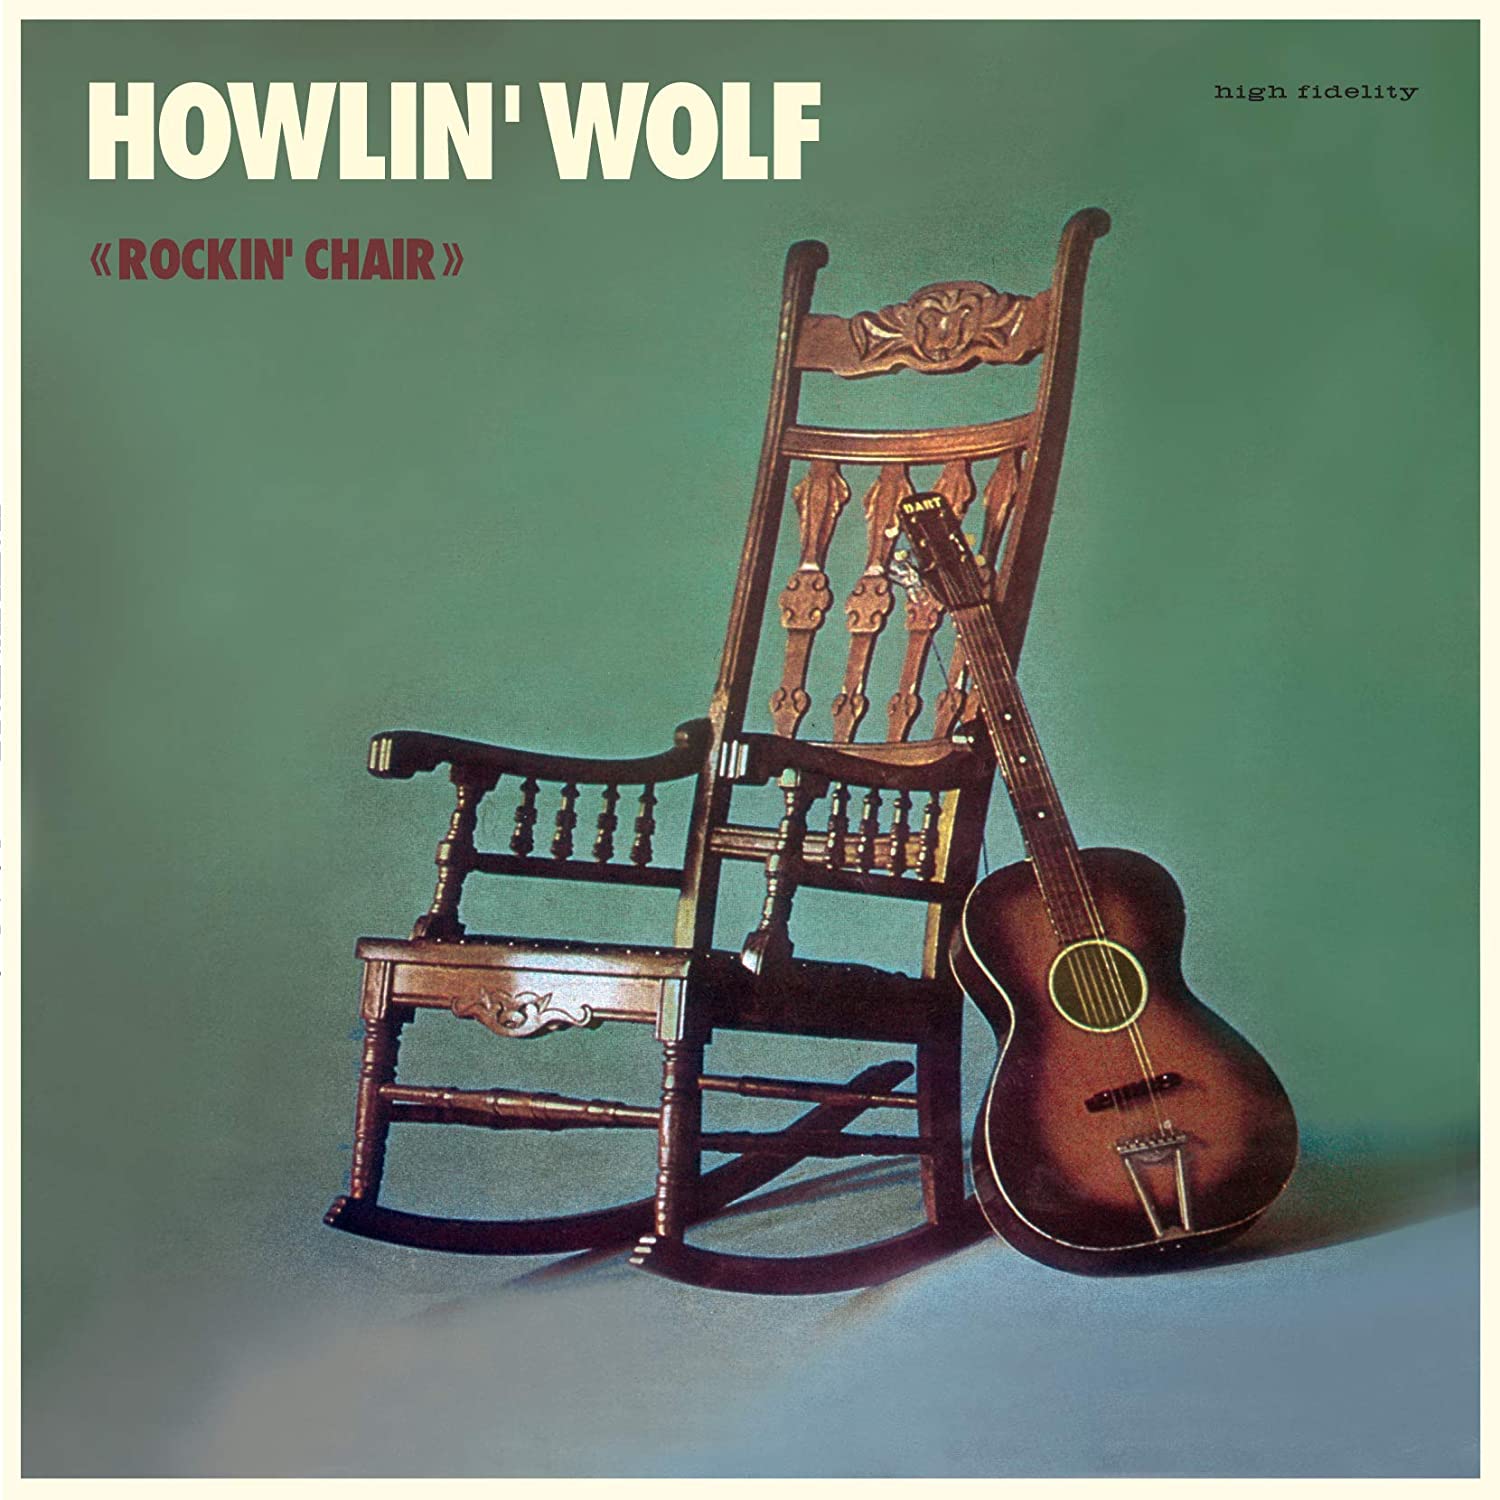 Howlin' Wolf "Howlin' Wolf" LP